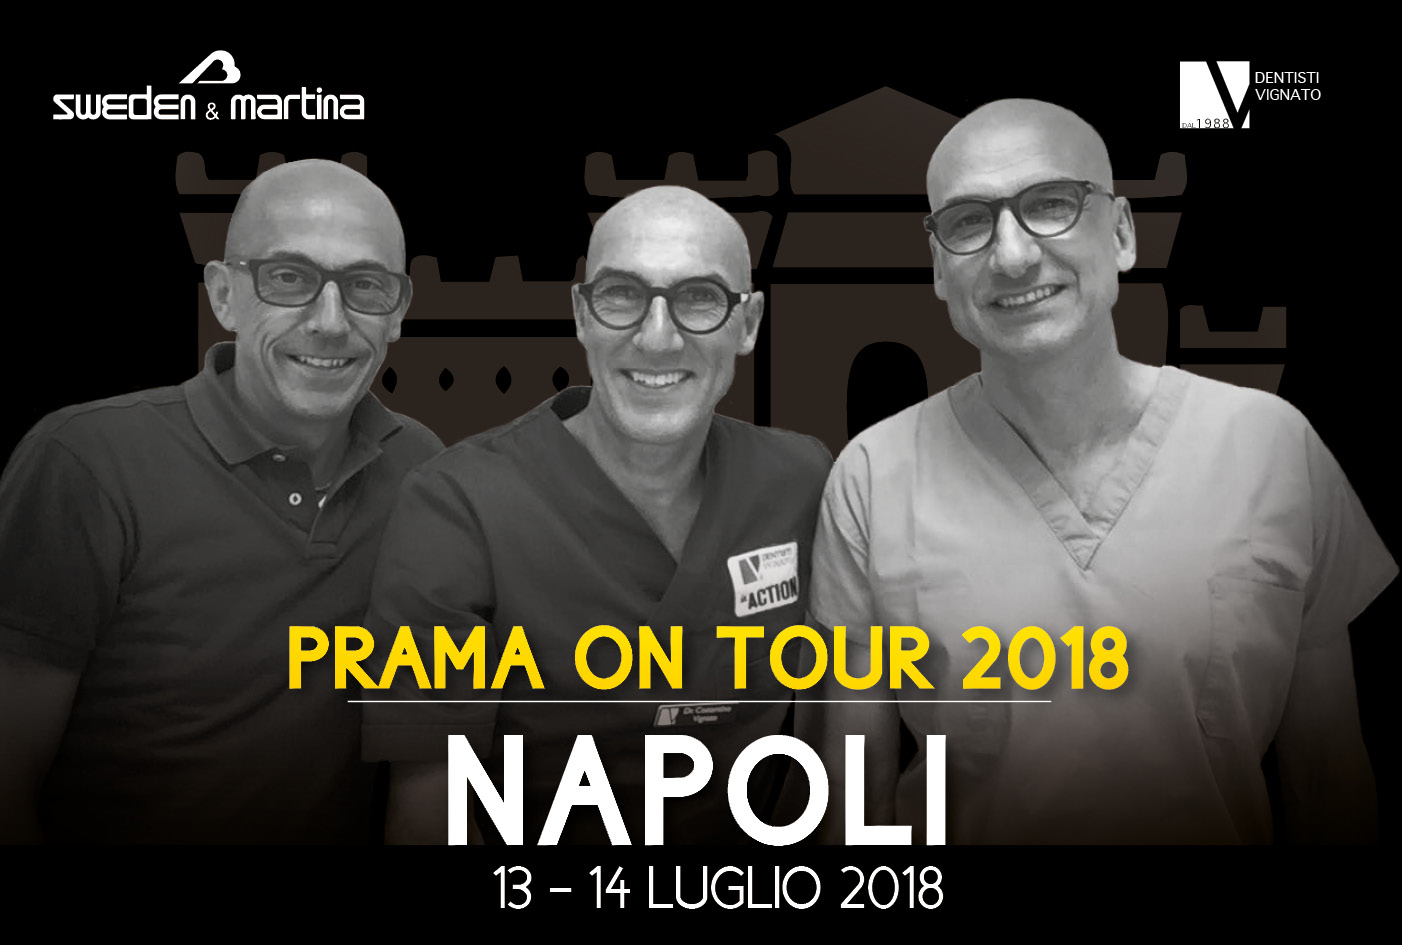 Dentisti Vignato - Prama on tour Napoli